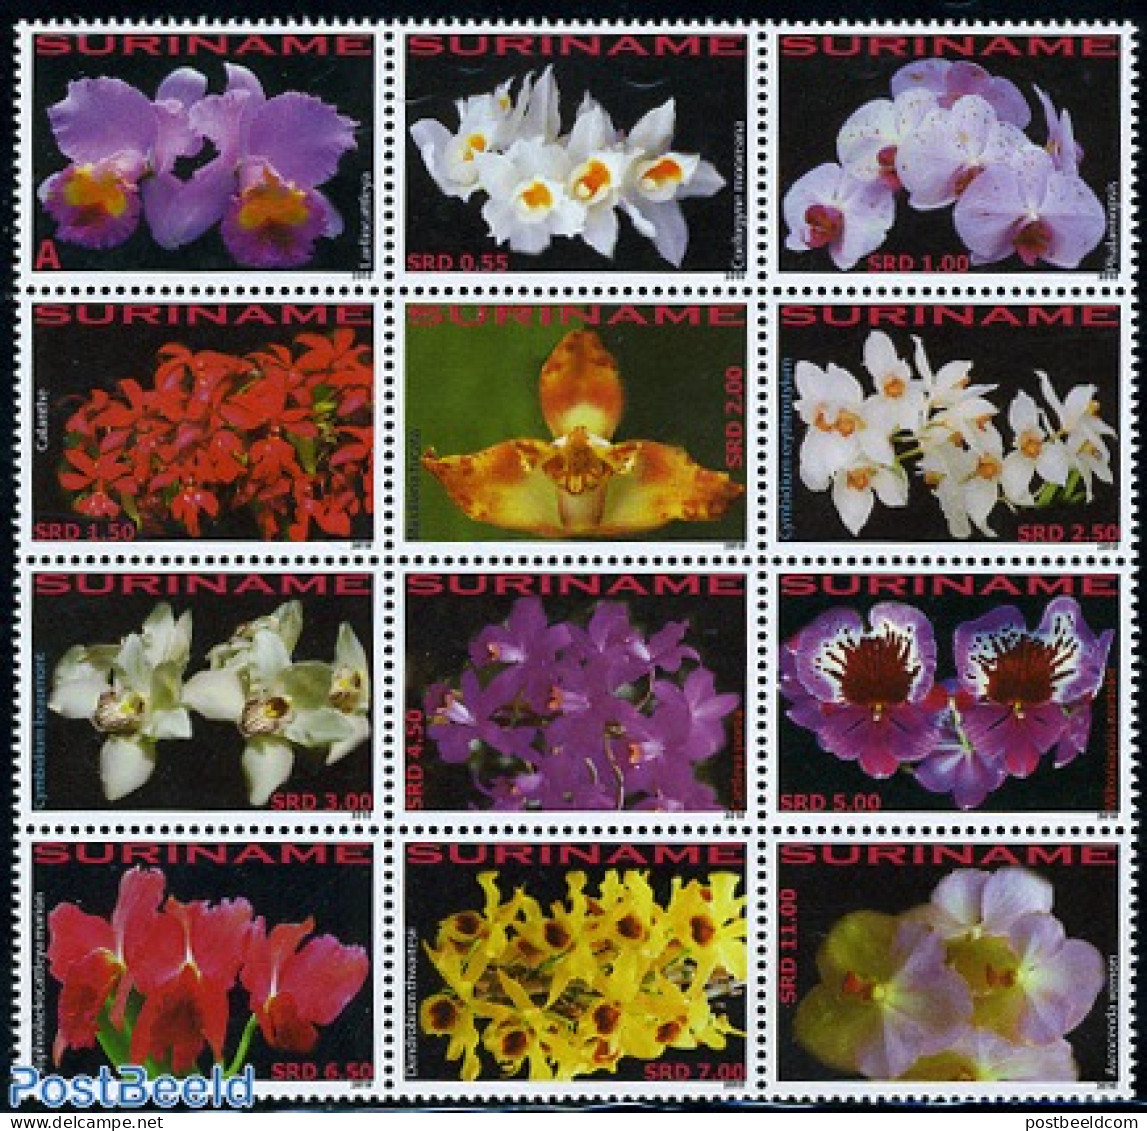 Suriname, Republic 2010 Orchids 12v, Sheetlet, Mint NH, Nature - Flowers & Plants - Orchids - Suriname